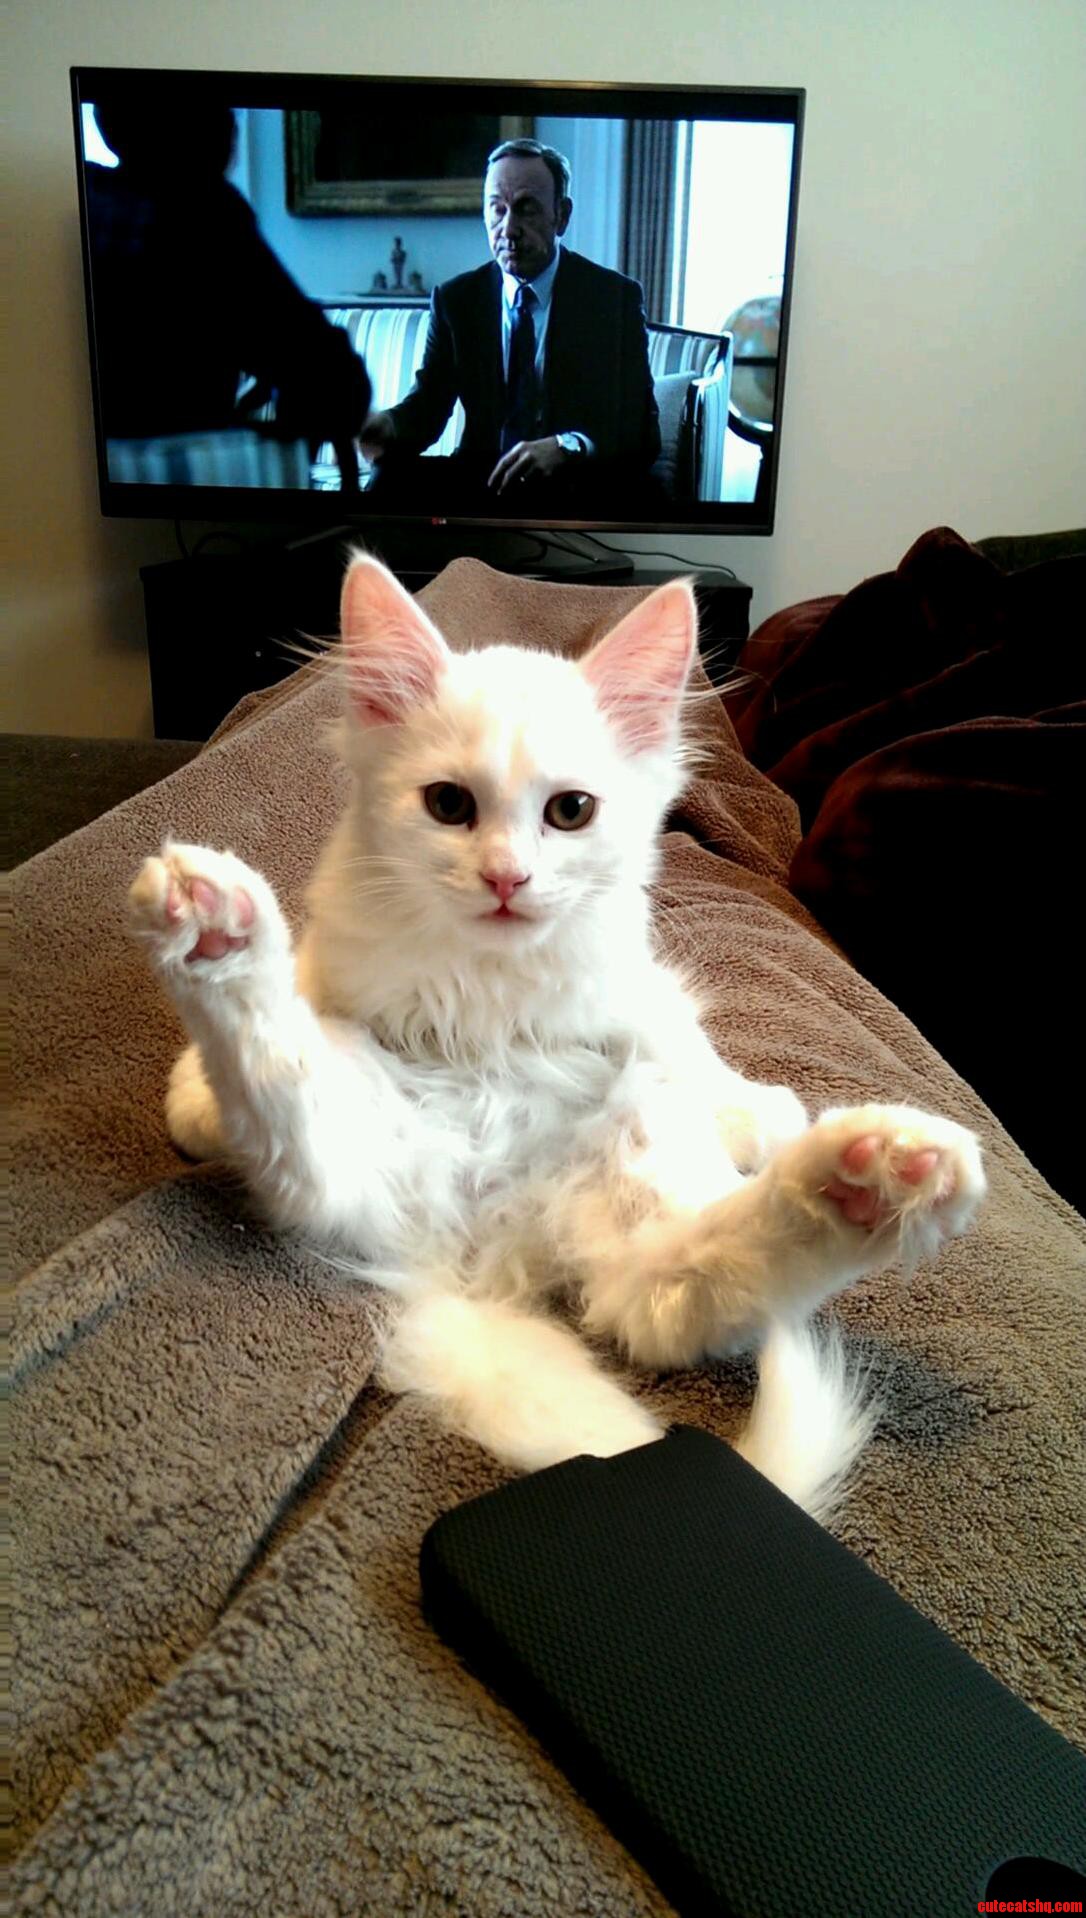 Meet My Newsiberian Kitten Q-Tip